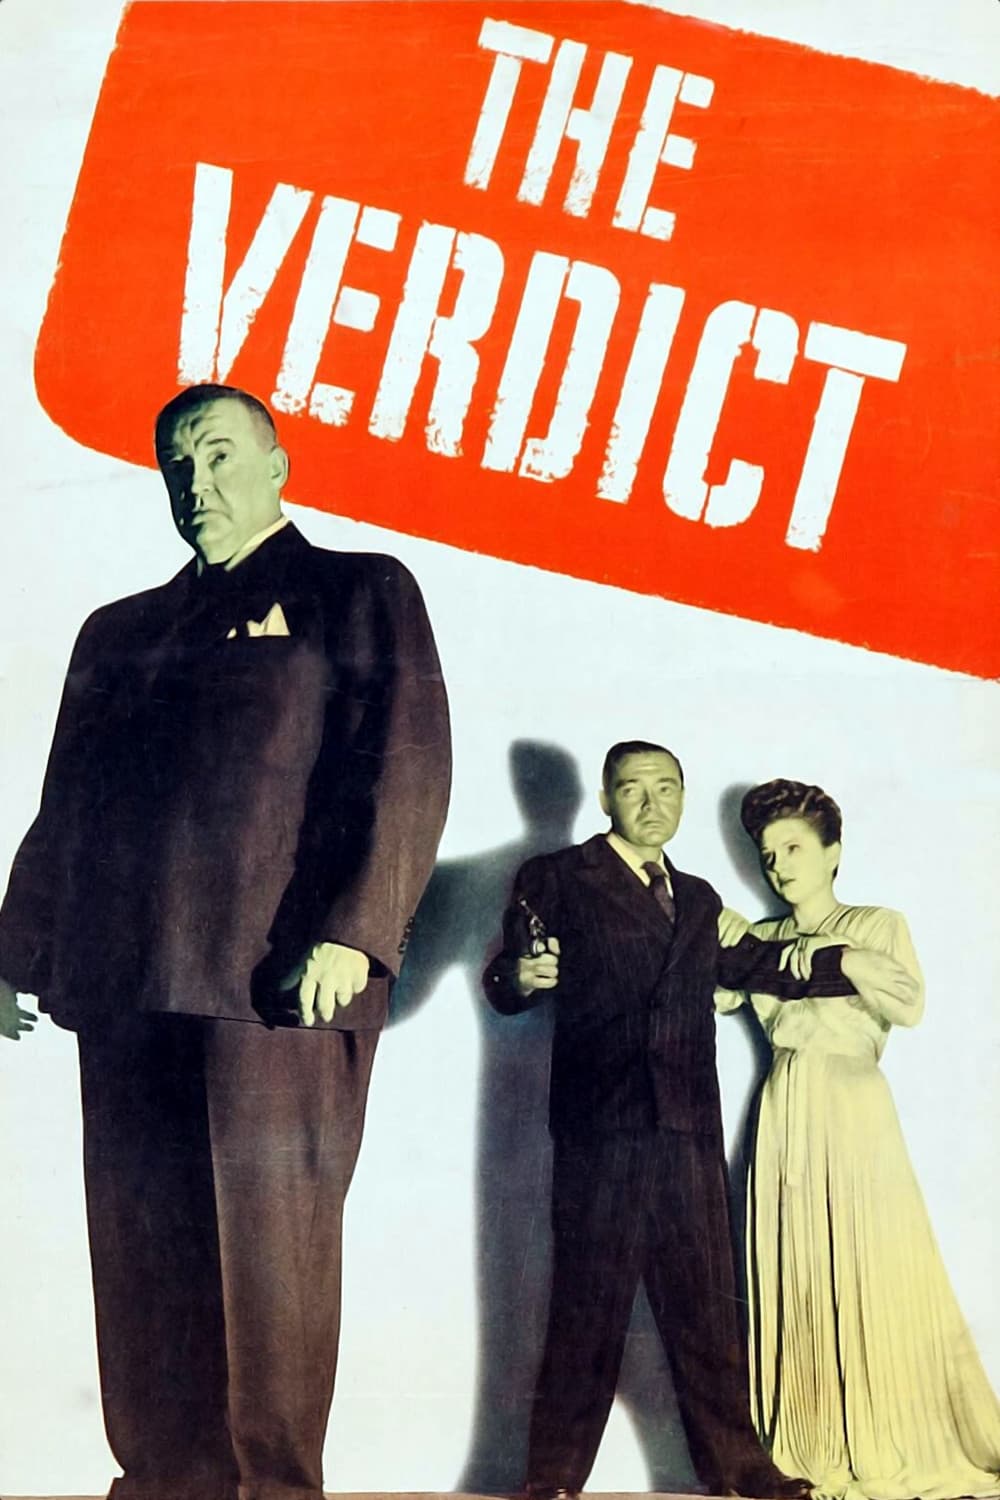 The Verdict (1946)